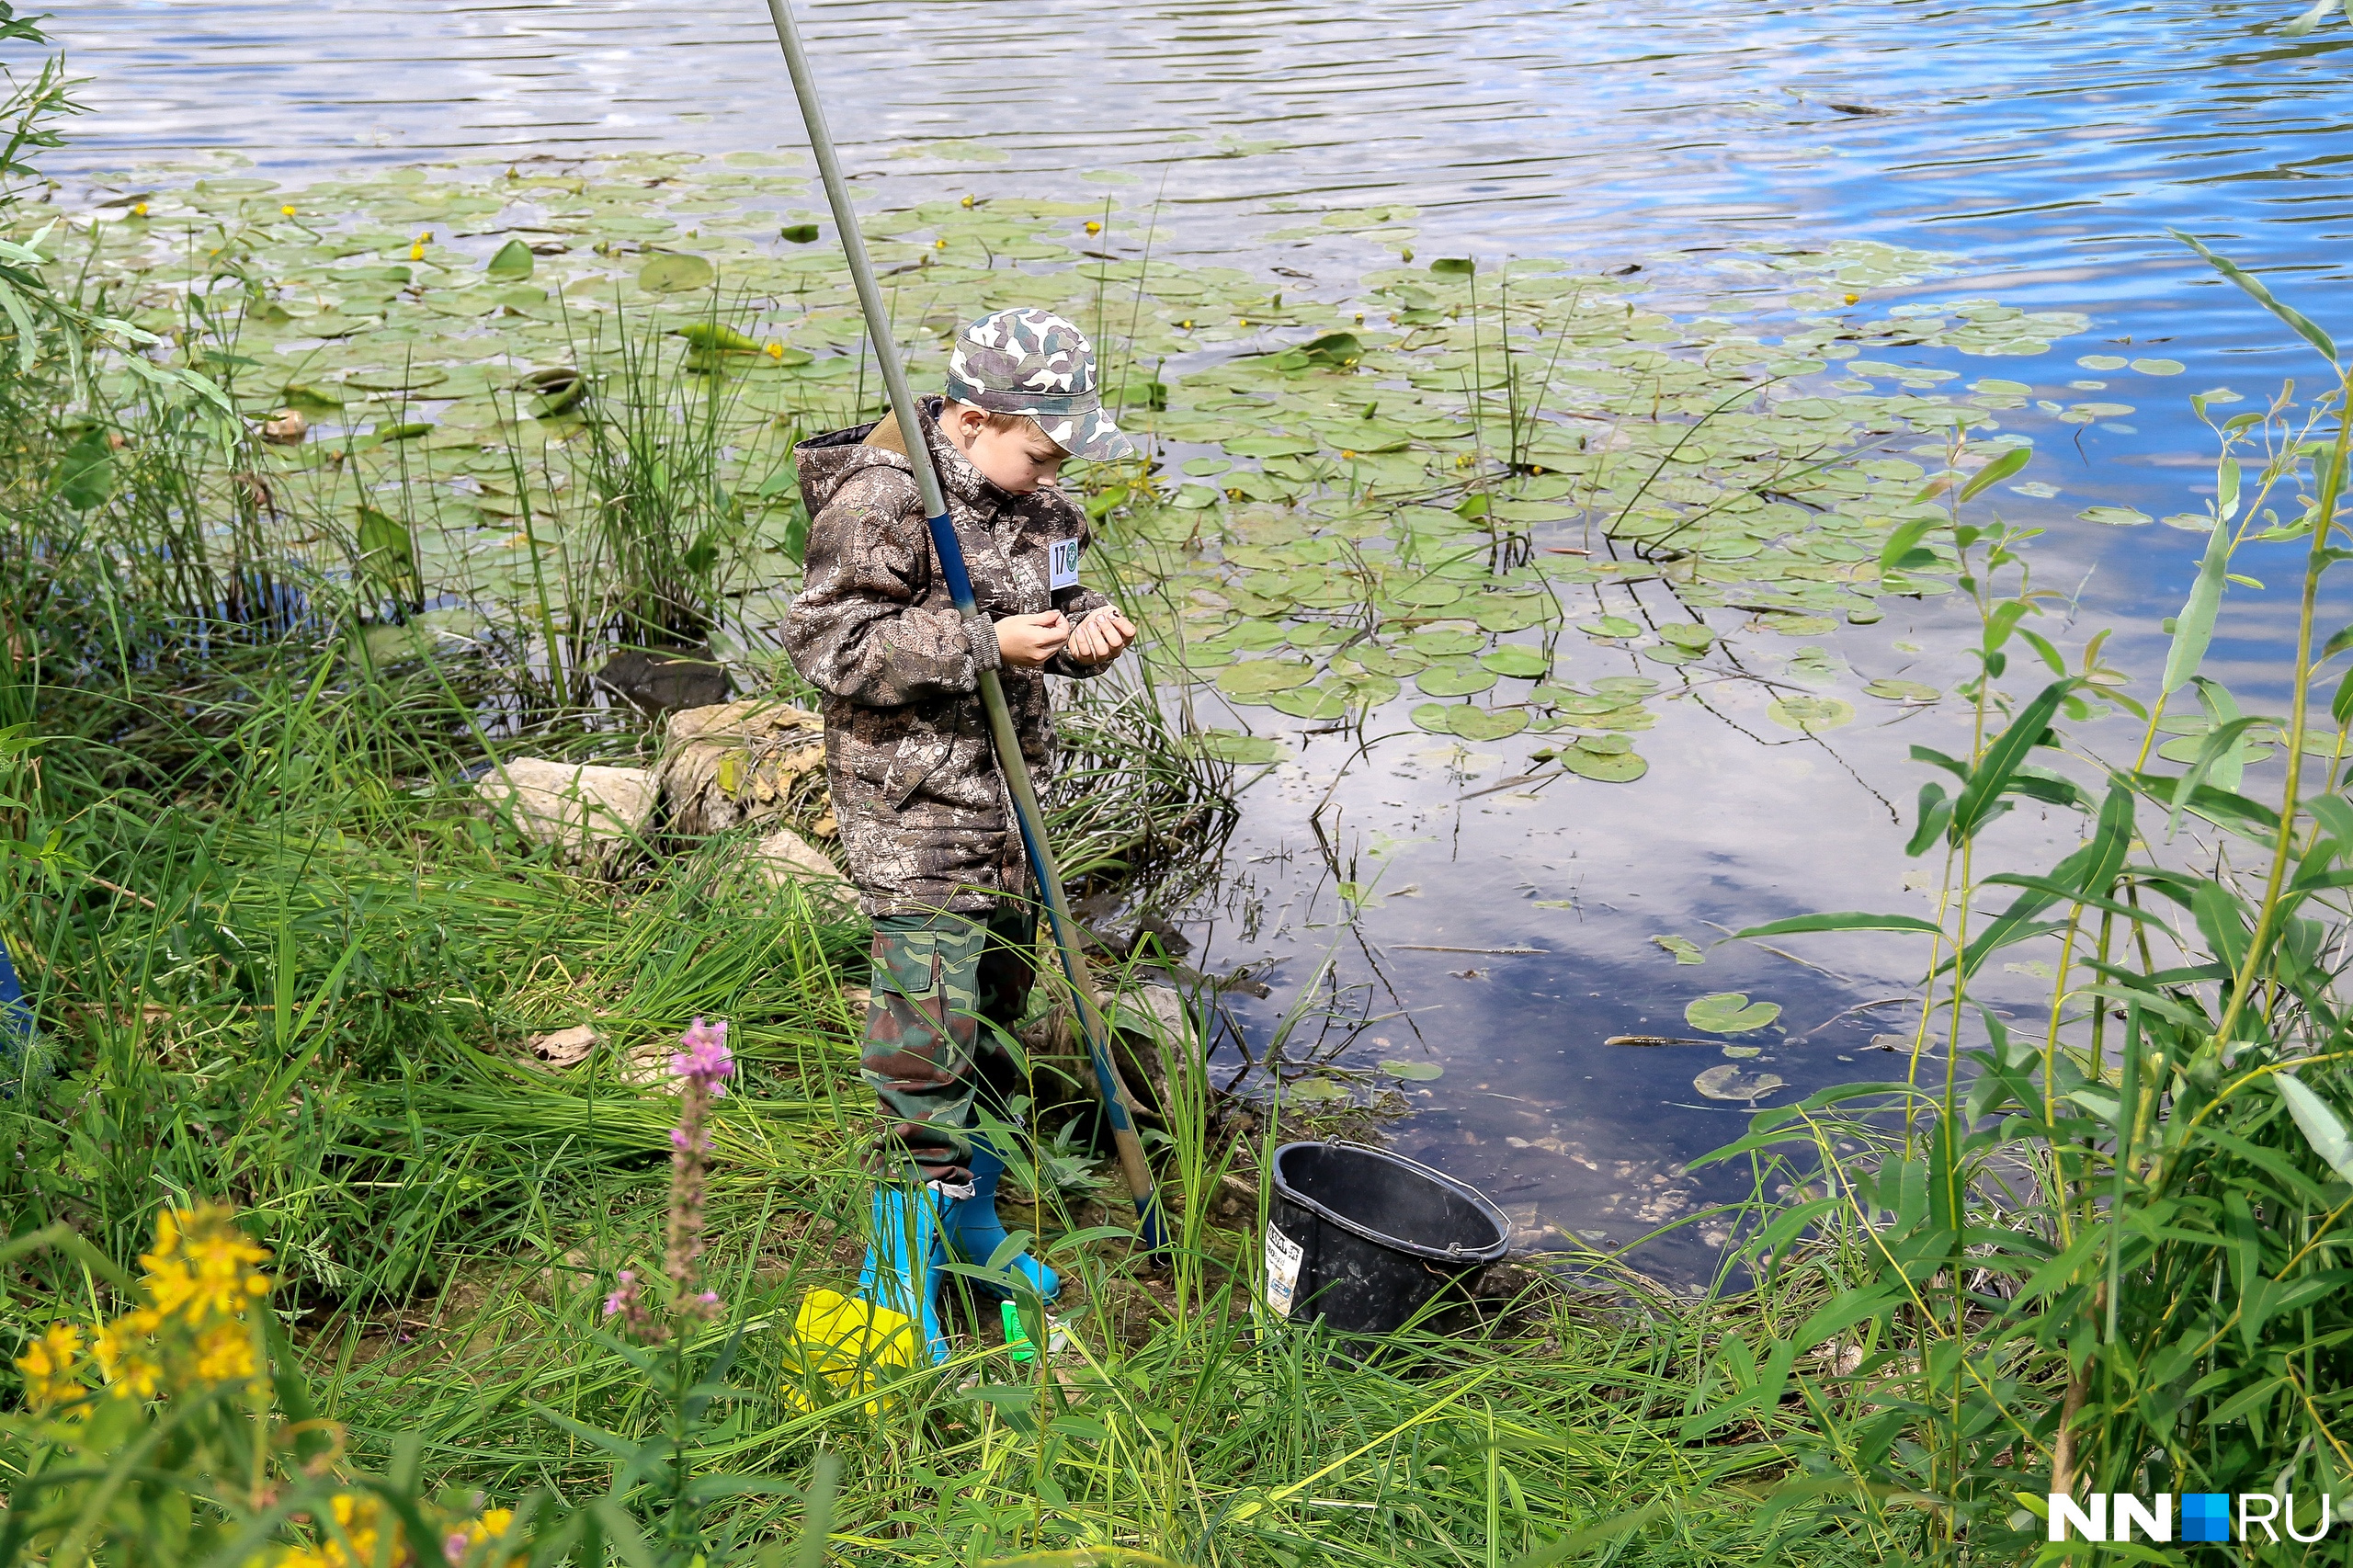 Самый молодой участник фестиваля — 11-летний Арсений Кулясов. Тем, что владеет рыбацким ремеслом с детства, очень гордится